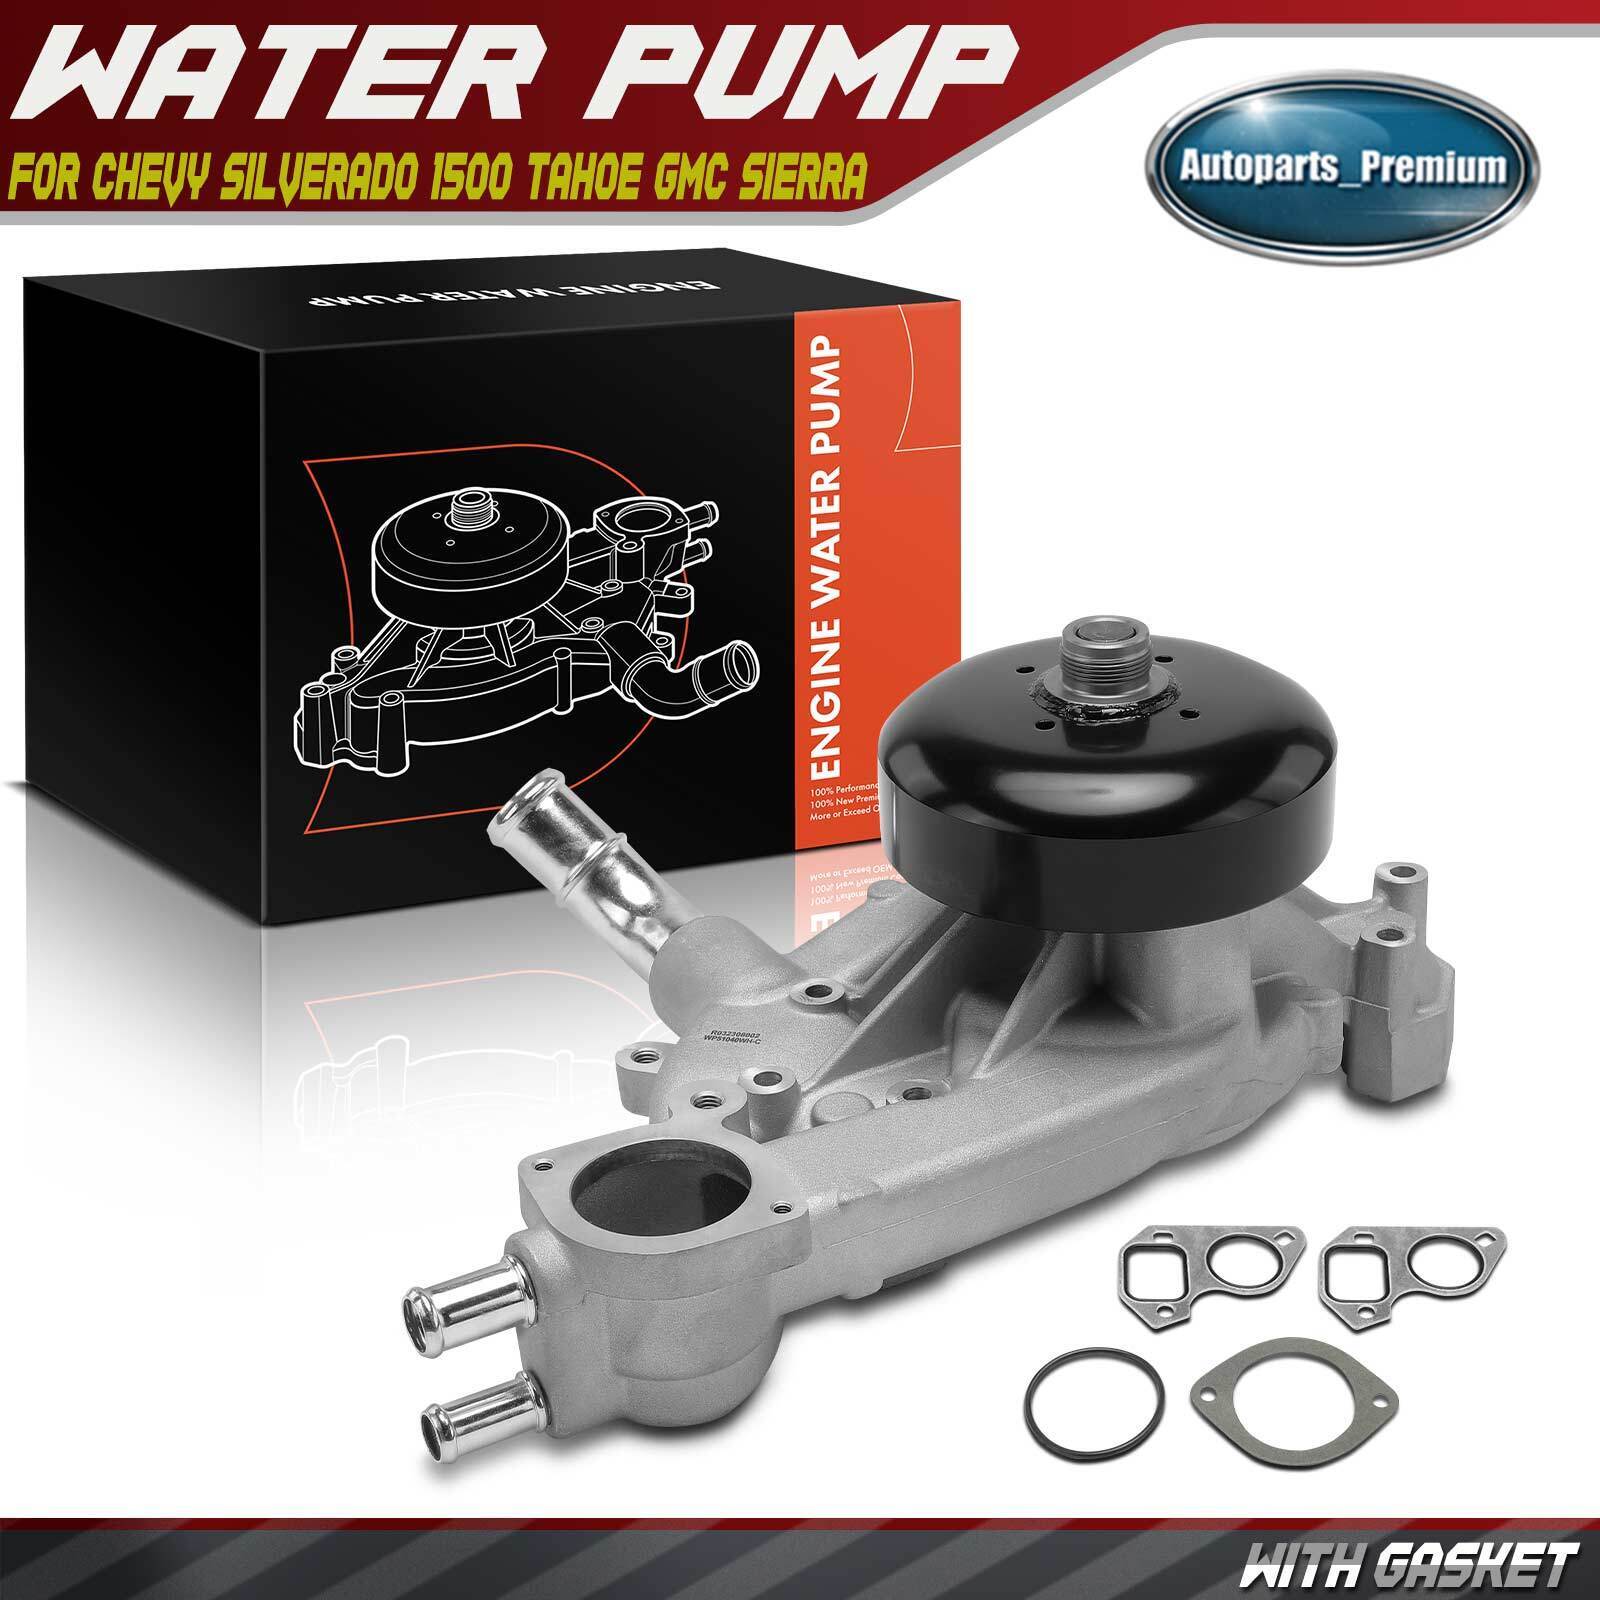 Water Pump w/ Gasket for Chevrolet Silverado GMC Sierra Cadillac 4.8L 5.3L 6.0L